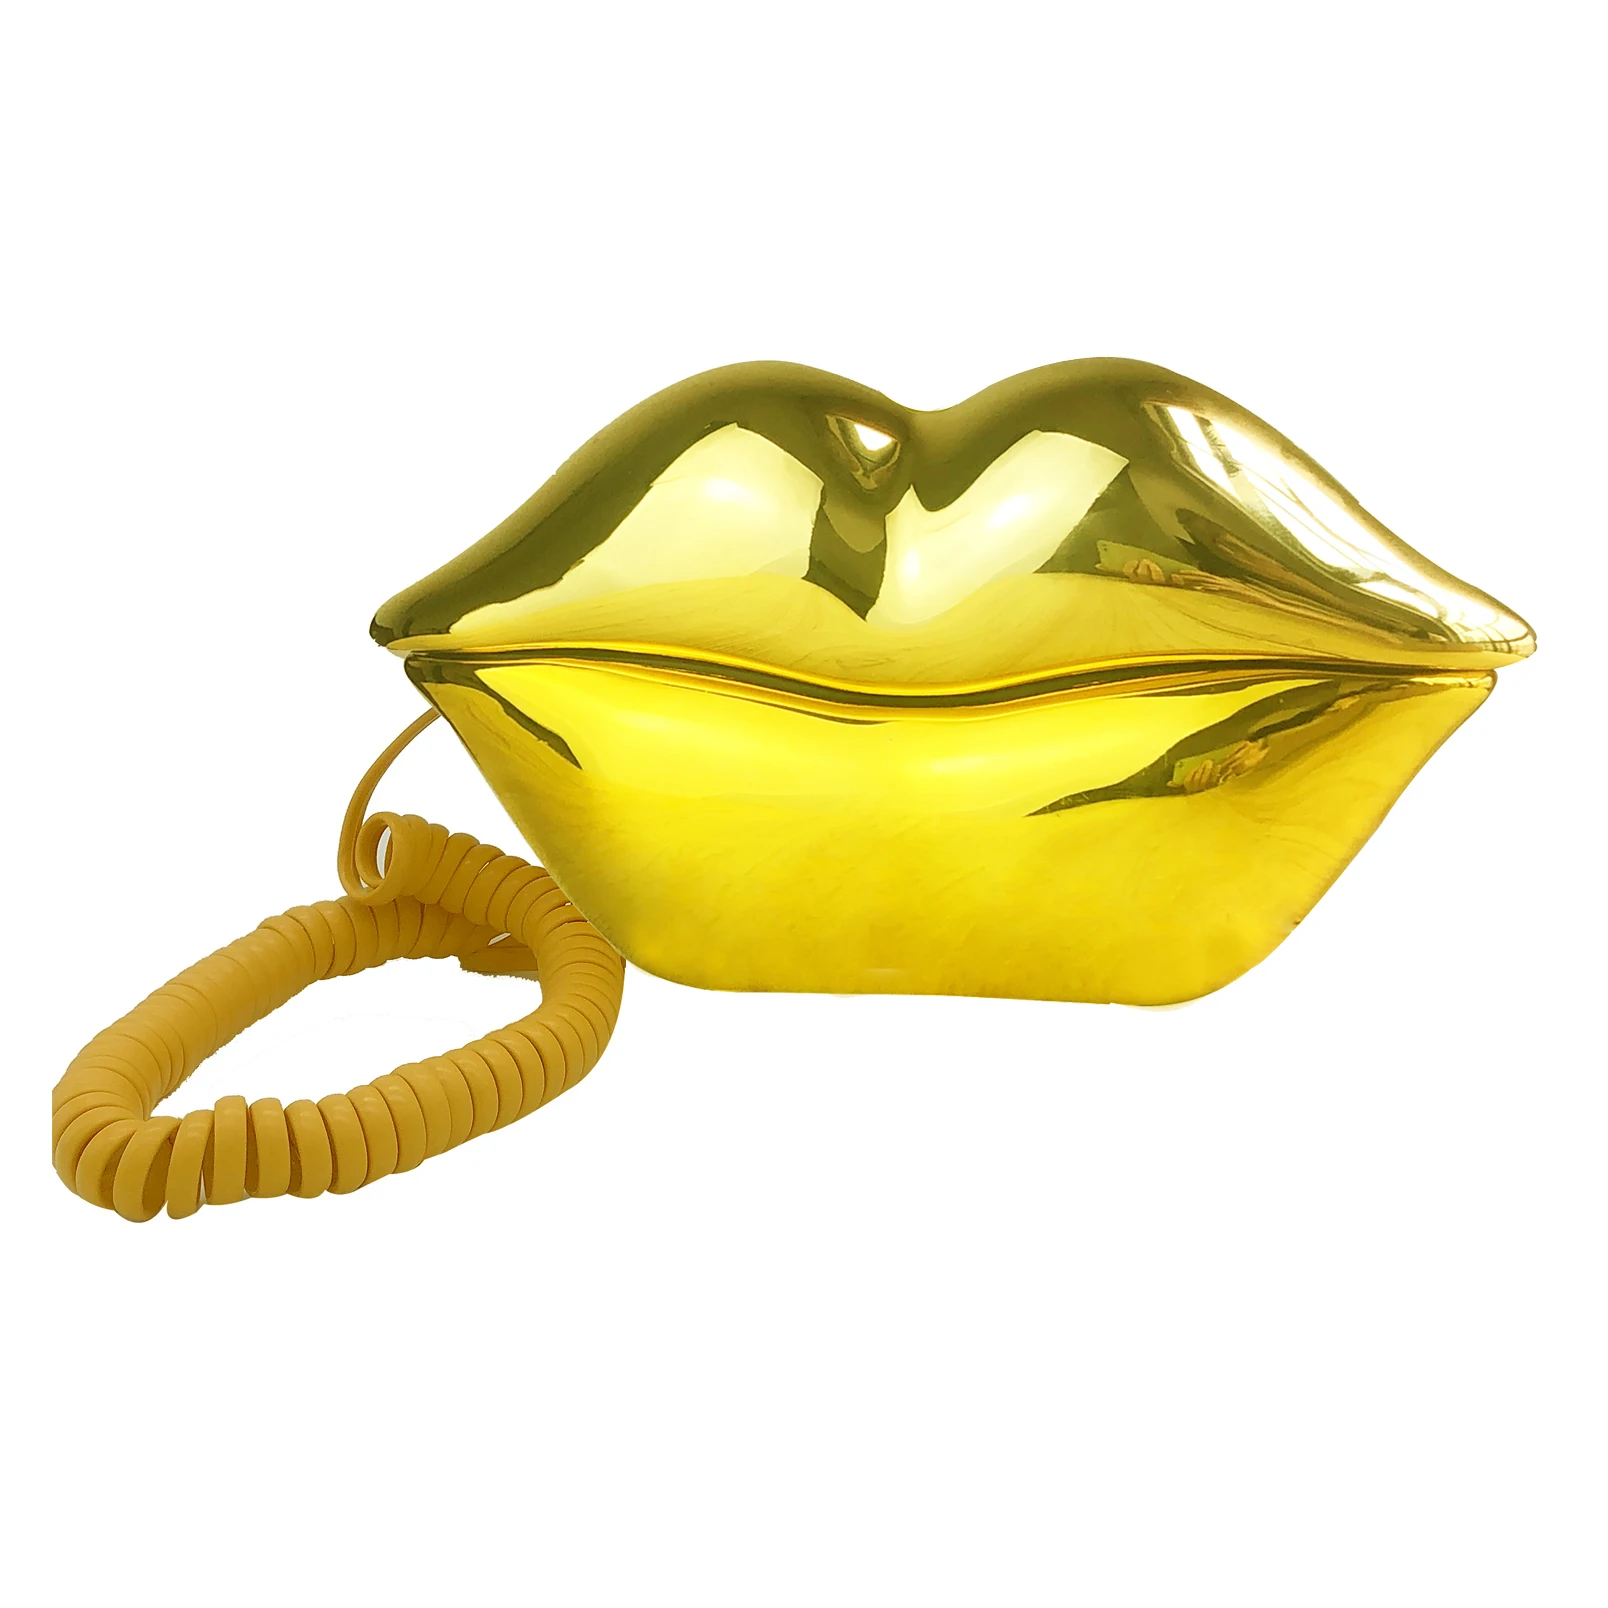 Aksesuarlar Dekor için Kablolu Altın Telefon Komik Yenilik Dudakları Telefon Kablolu Ağız Telefon Karikatür Şeklinde Gerçek Alan Ev Ofis